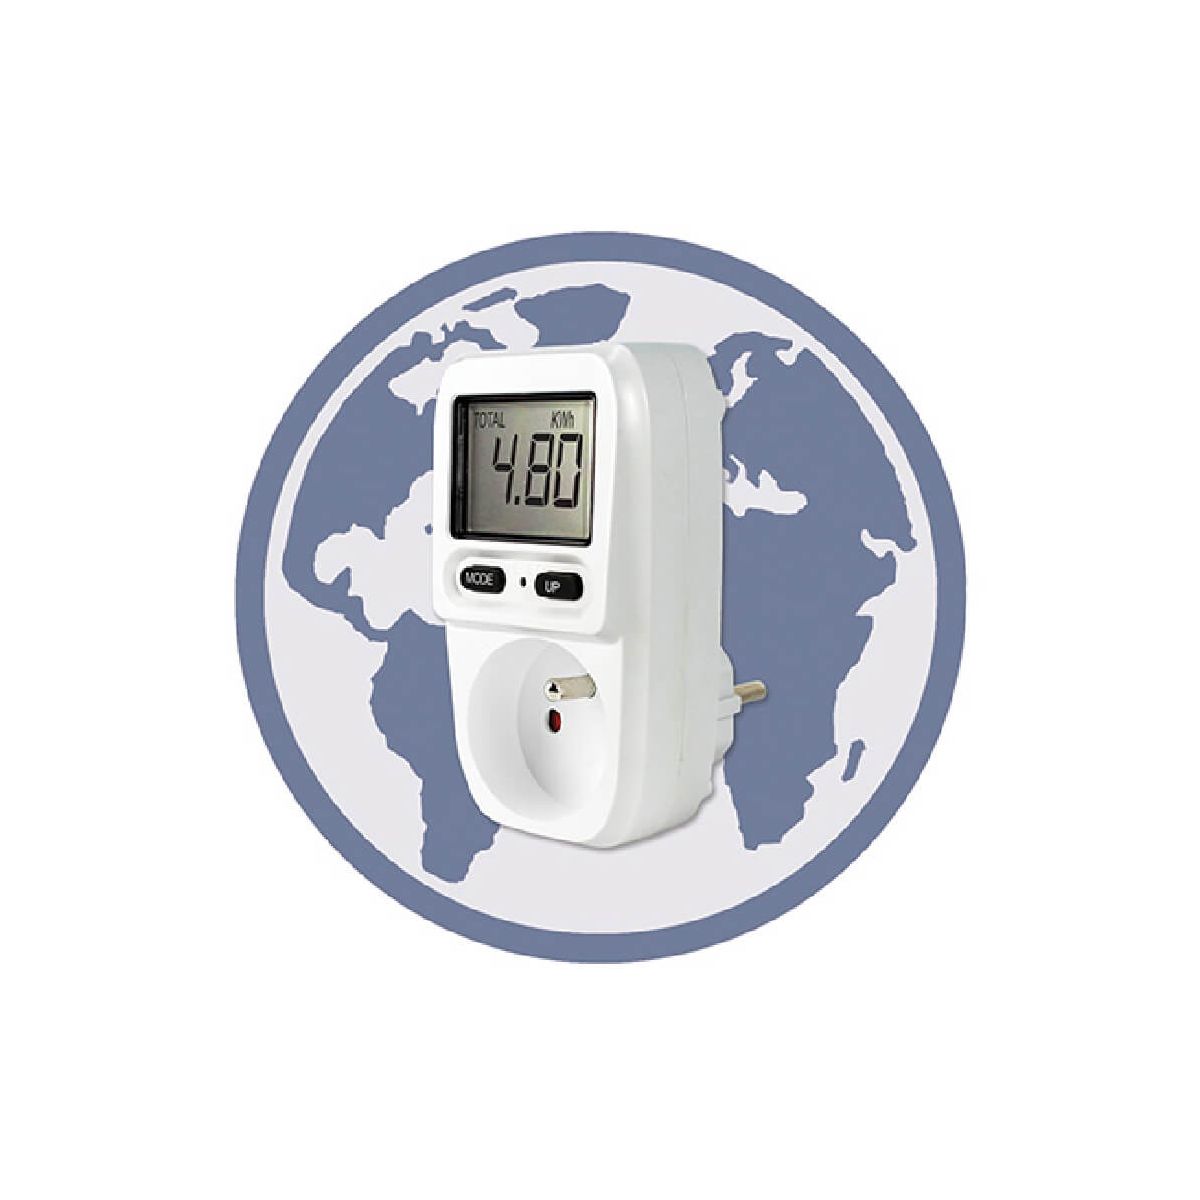 Contrôleur de consommation - Mini-wattmètre